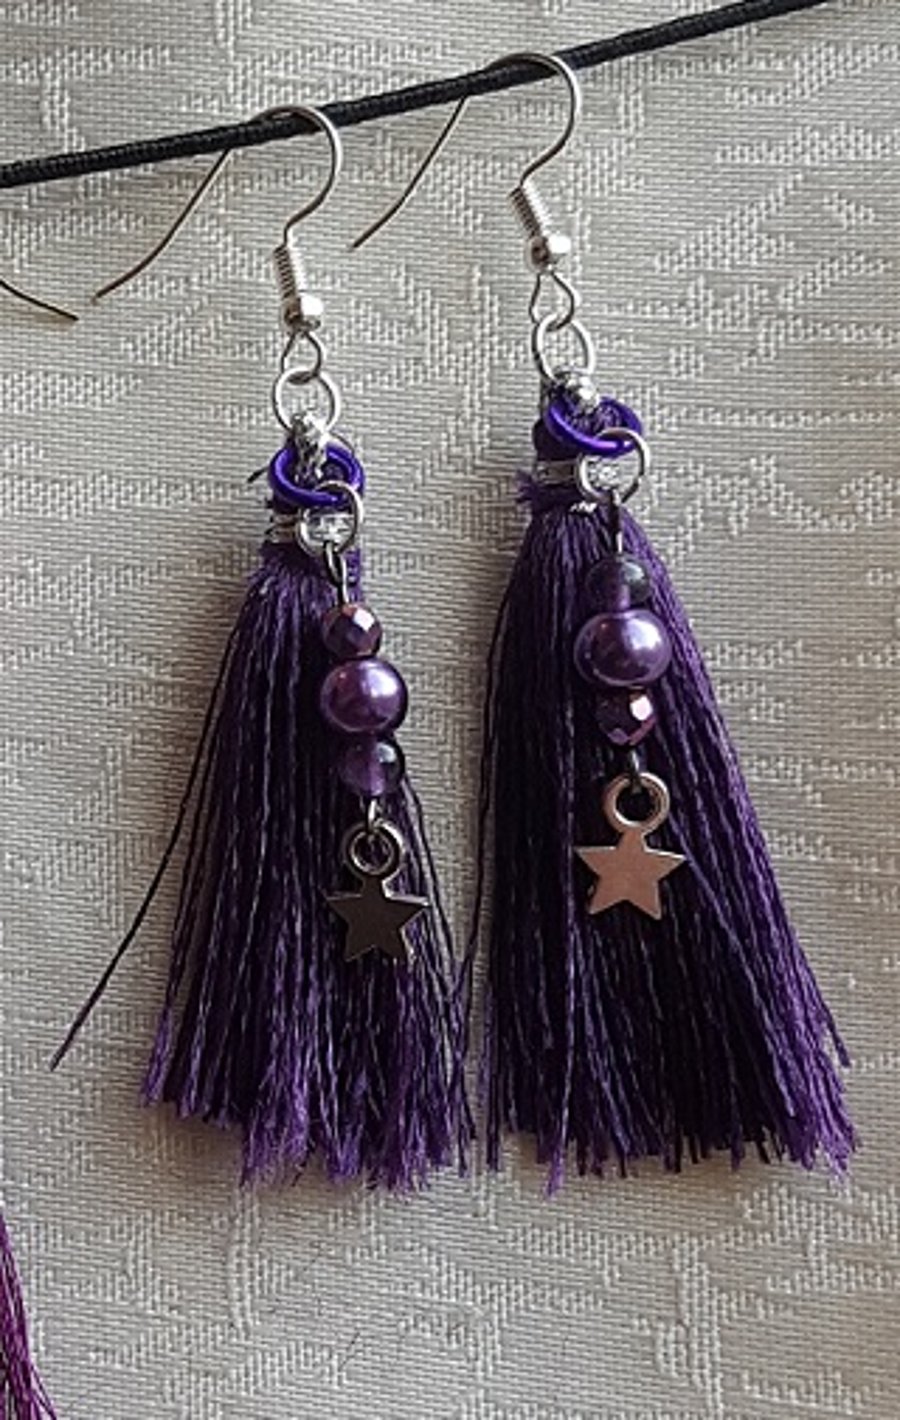 Beautiful purple tassel earrings with stars.